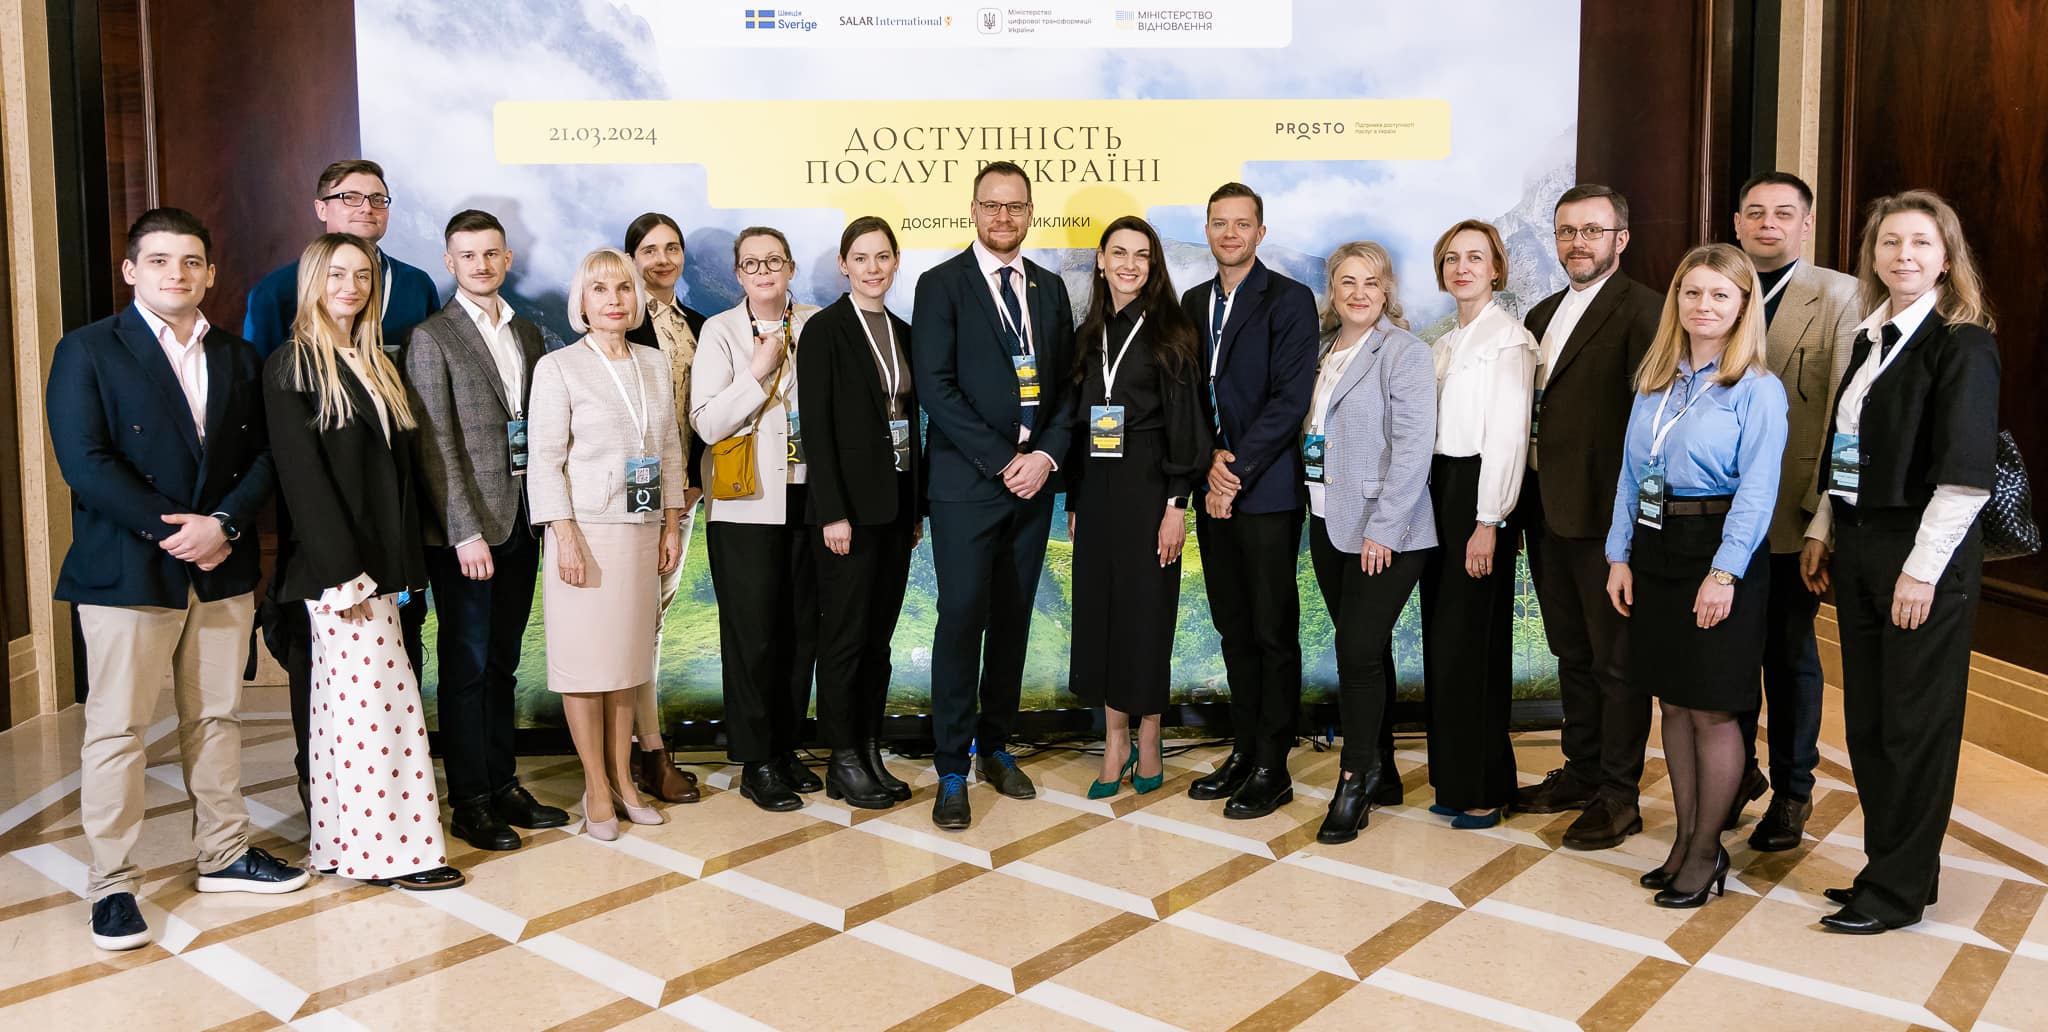 Представники Центру надання адміністративних послуг Ужгорода взяли участь у конференції «Доступність послуг в Україні: досягнення та виклики»